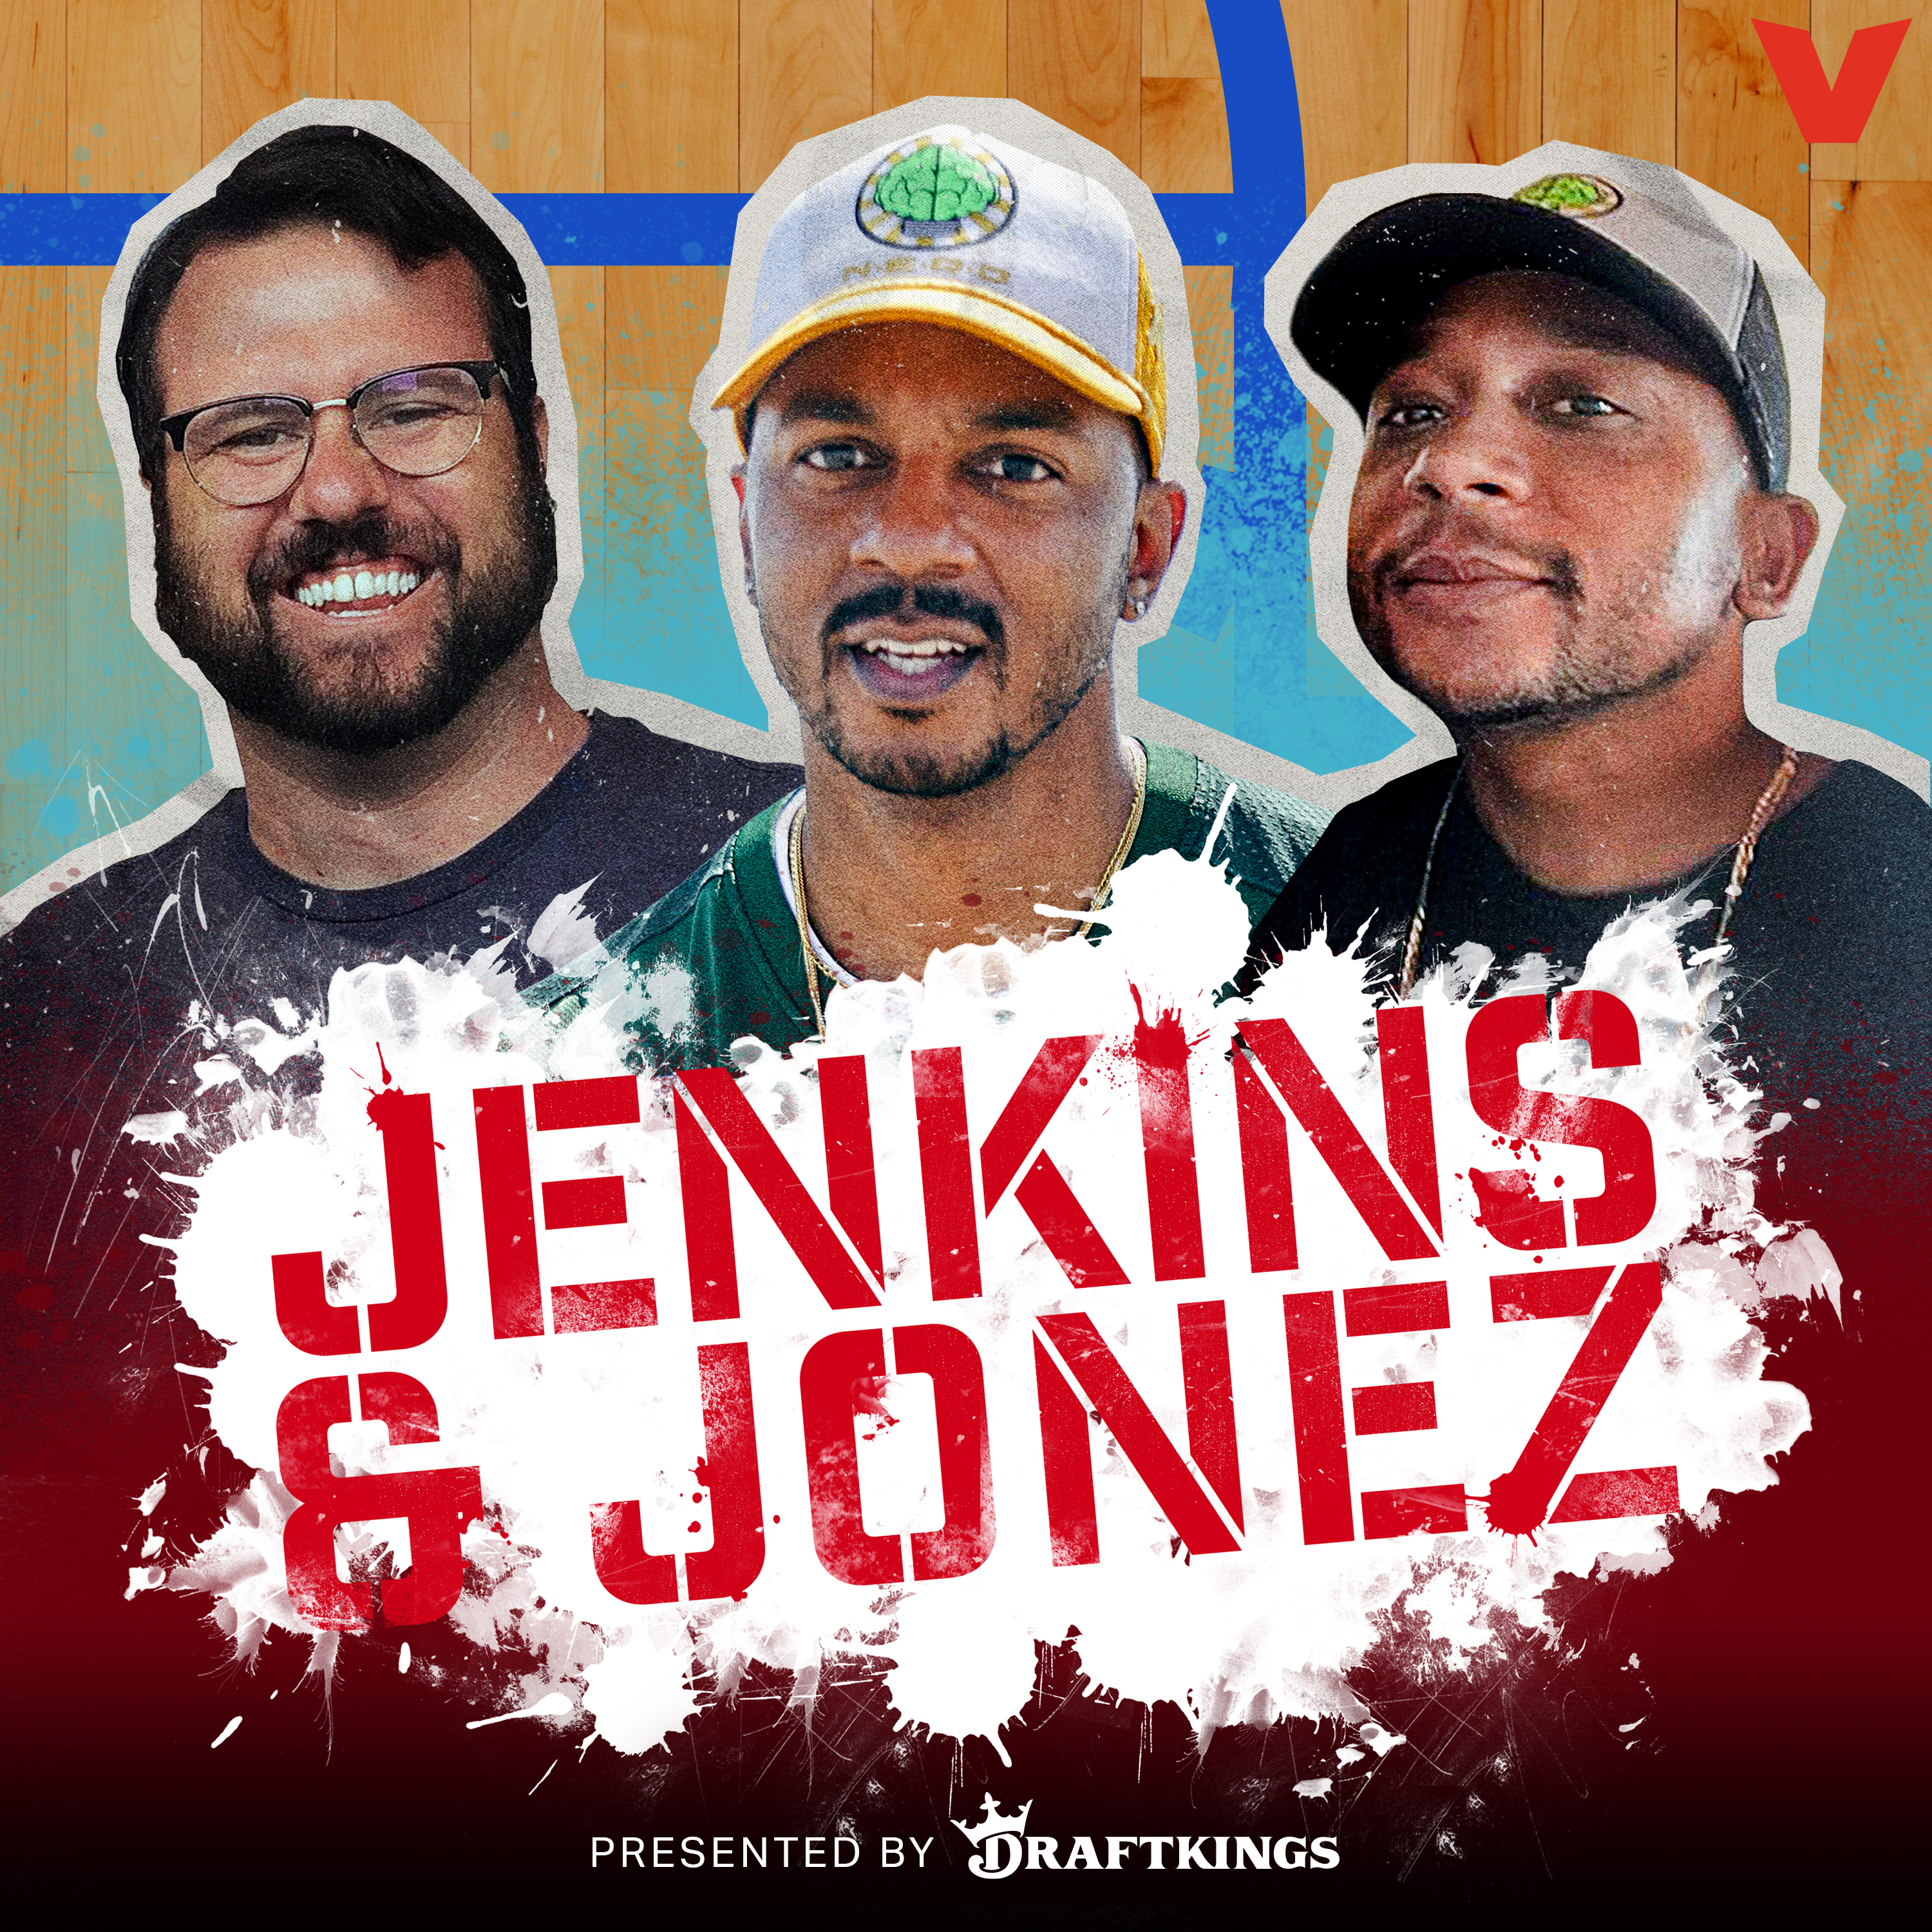 Jenkins and Jonez - The Black vs. White Bowl